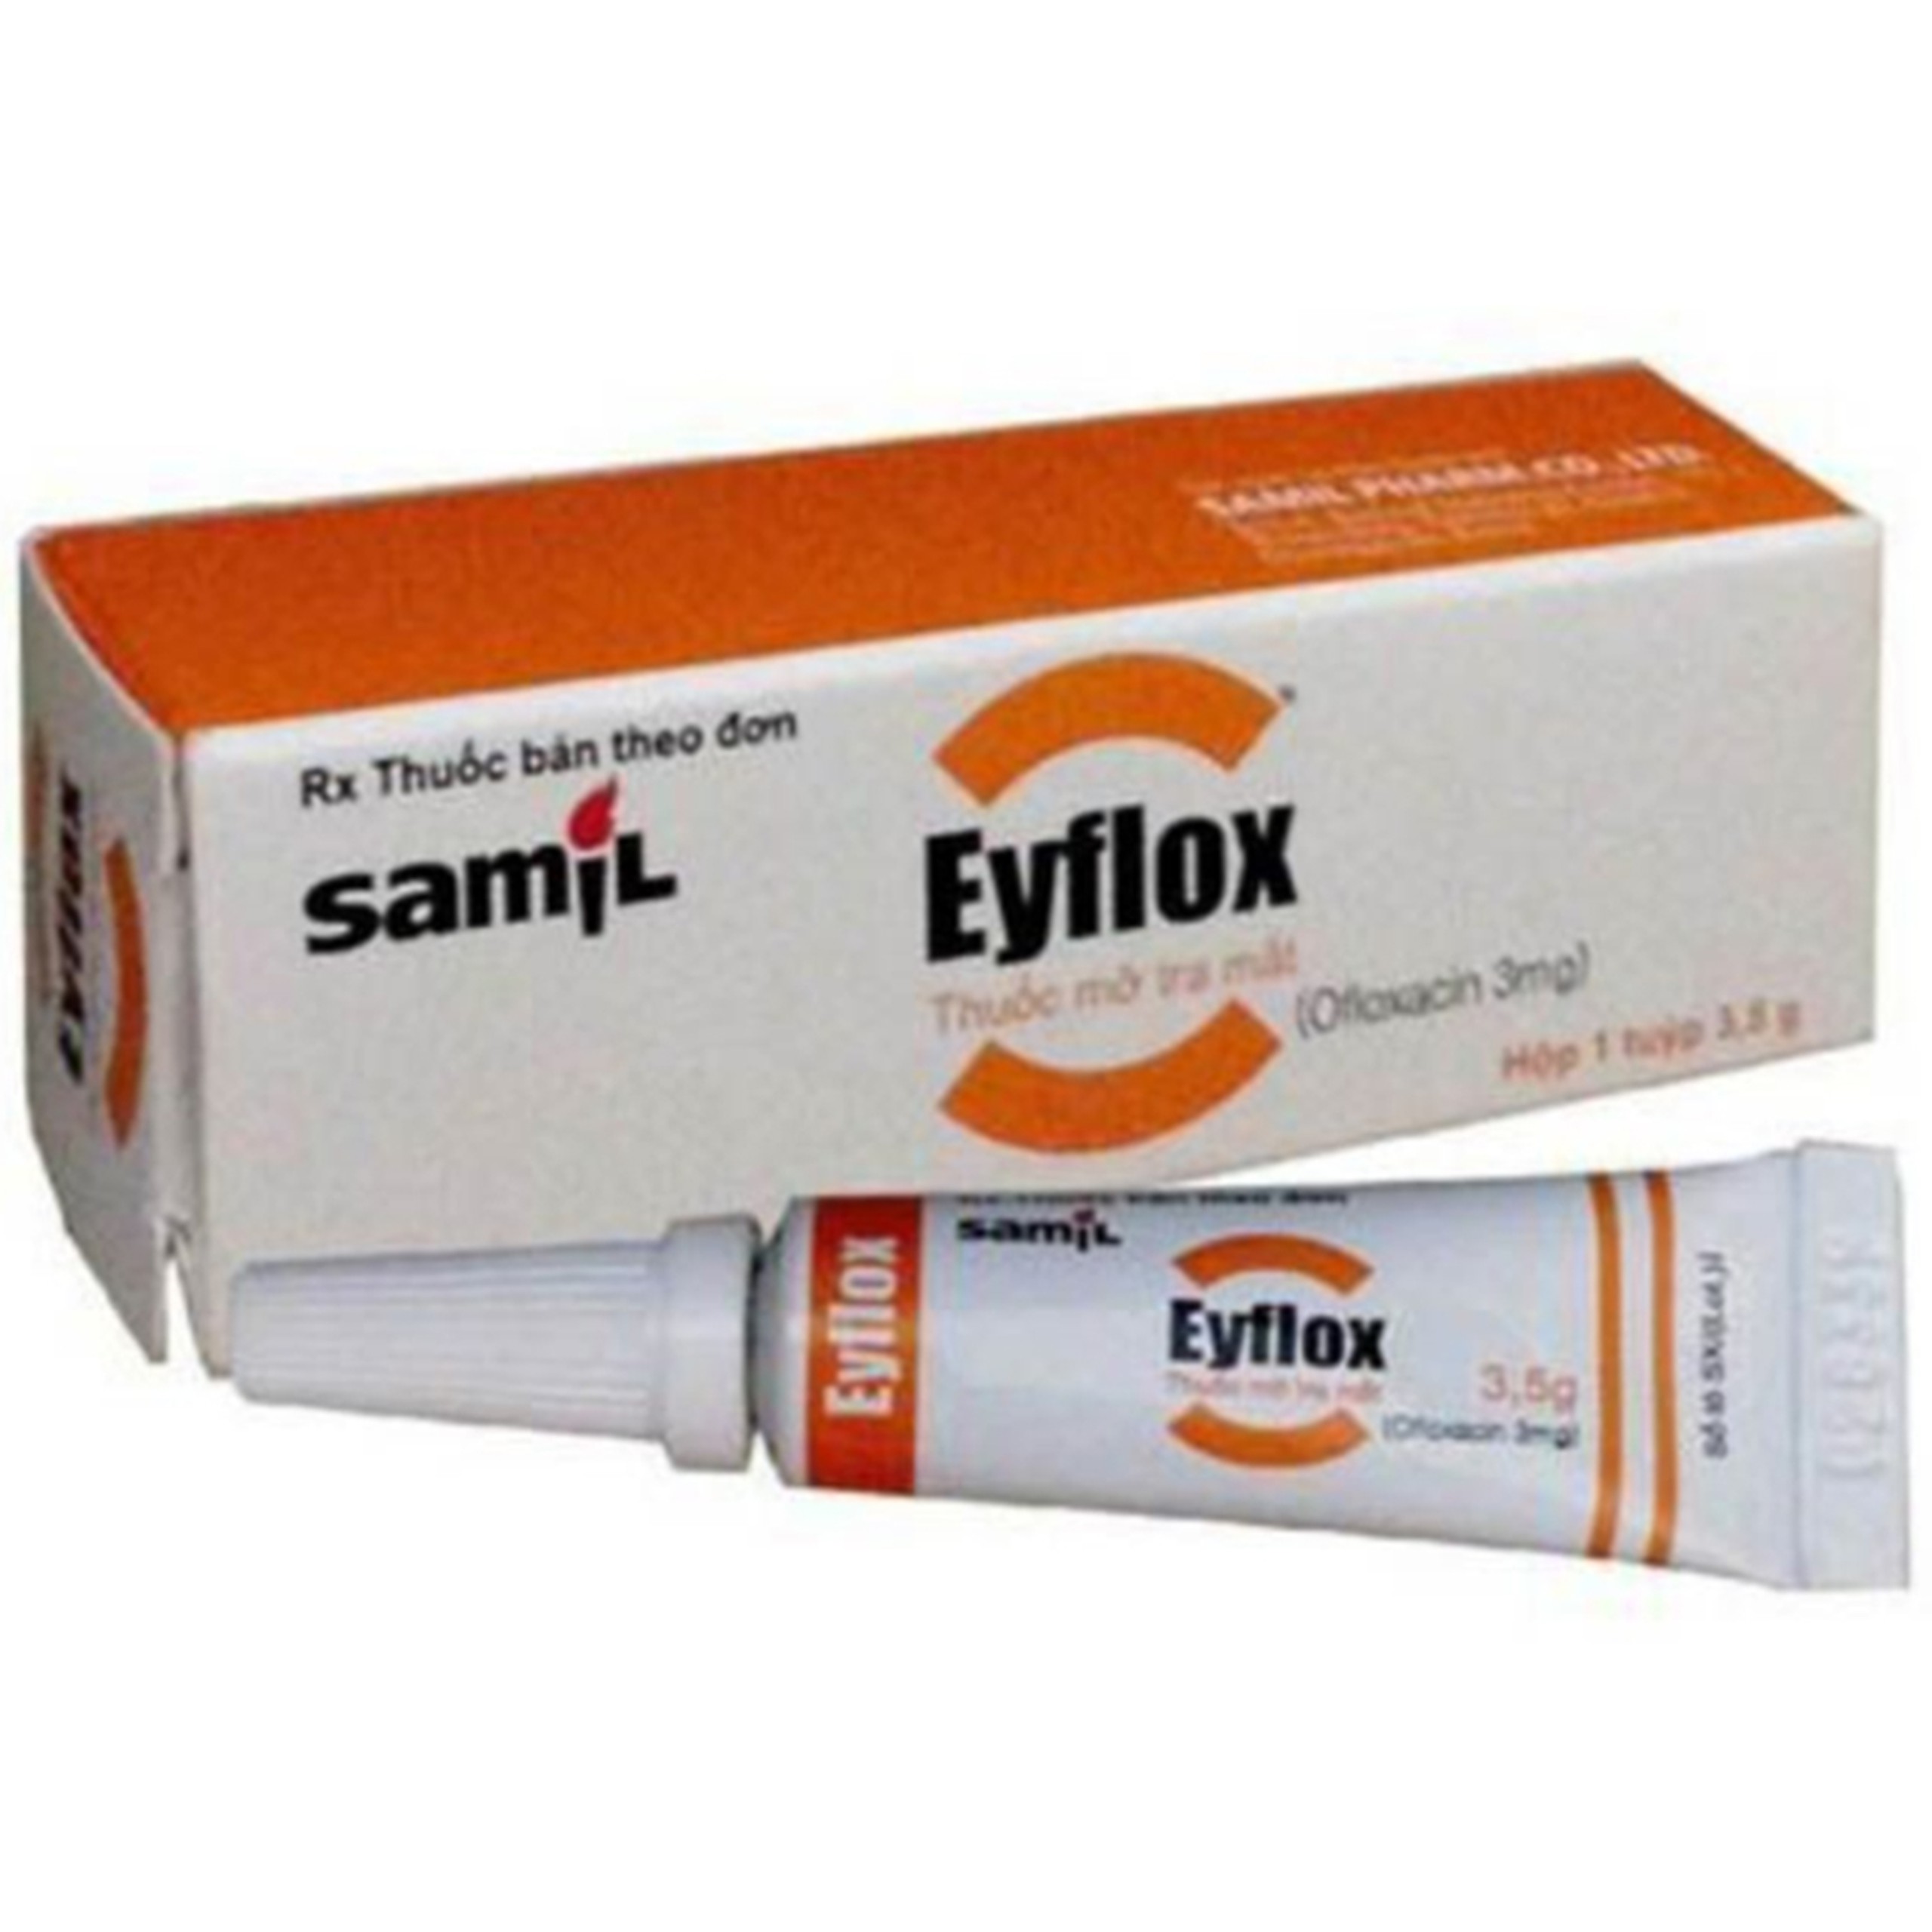 Thuốc mỡ tra mắt Eyflox Samil điều trị bệnh nhiễm khuẩn ở mắt (3.5g)